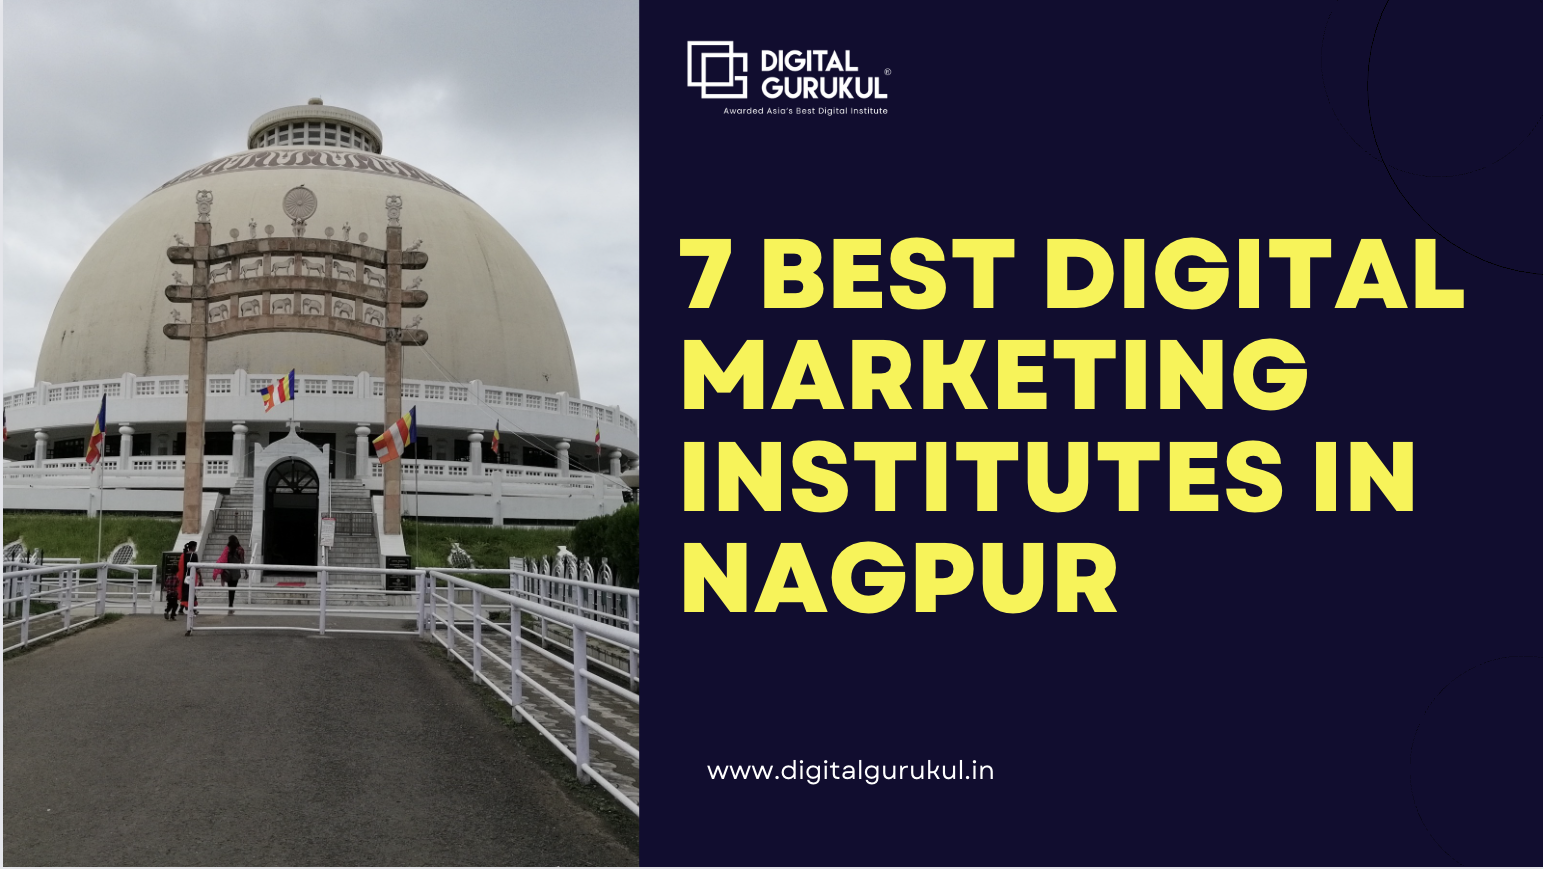 7 Best Digital Marketing Institutes in Nagpur